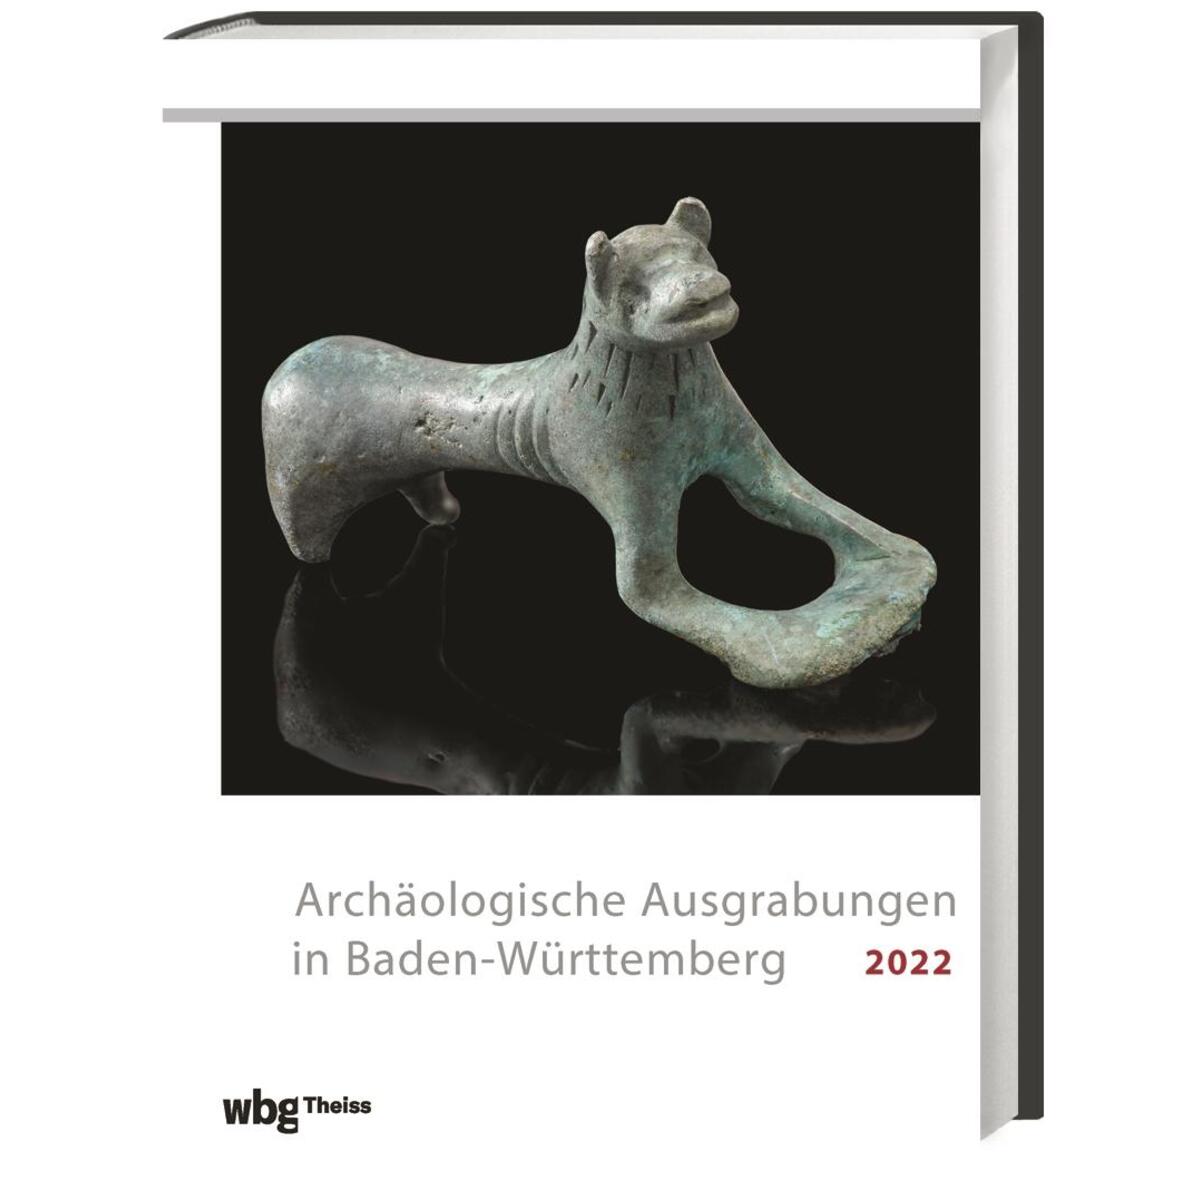 Archäologische Ausgrabungen in Baden-Württemberg 2022 von wbg Theiss